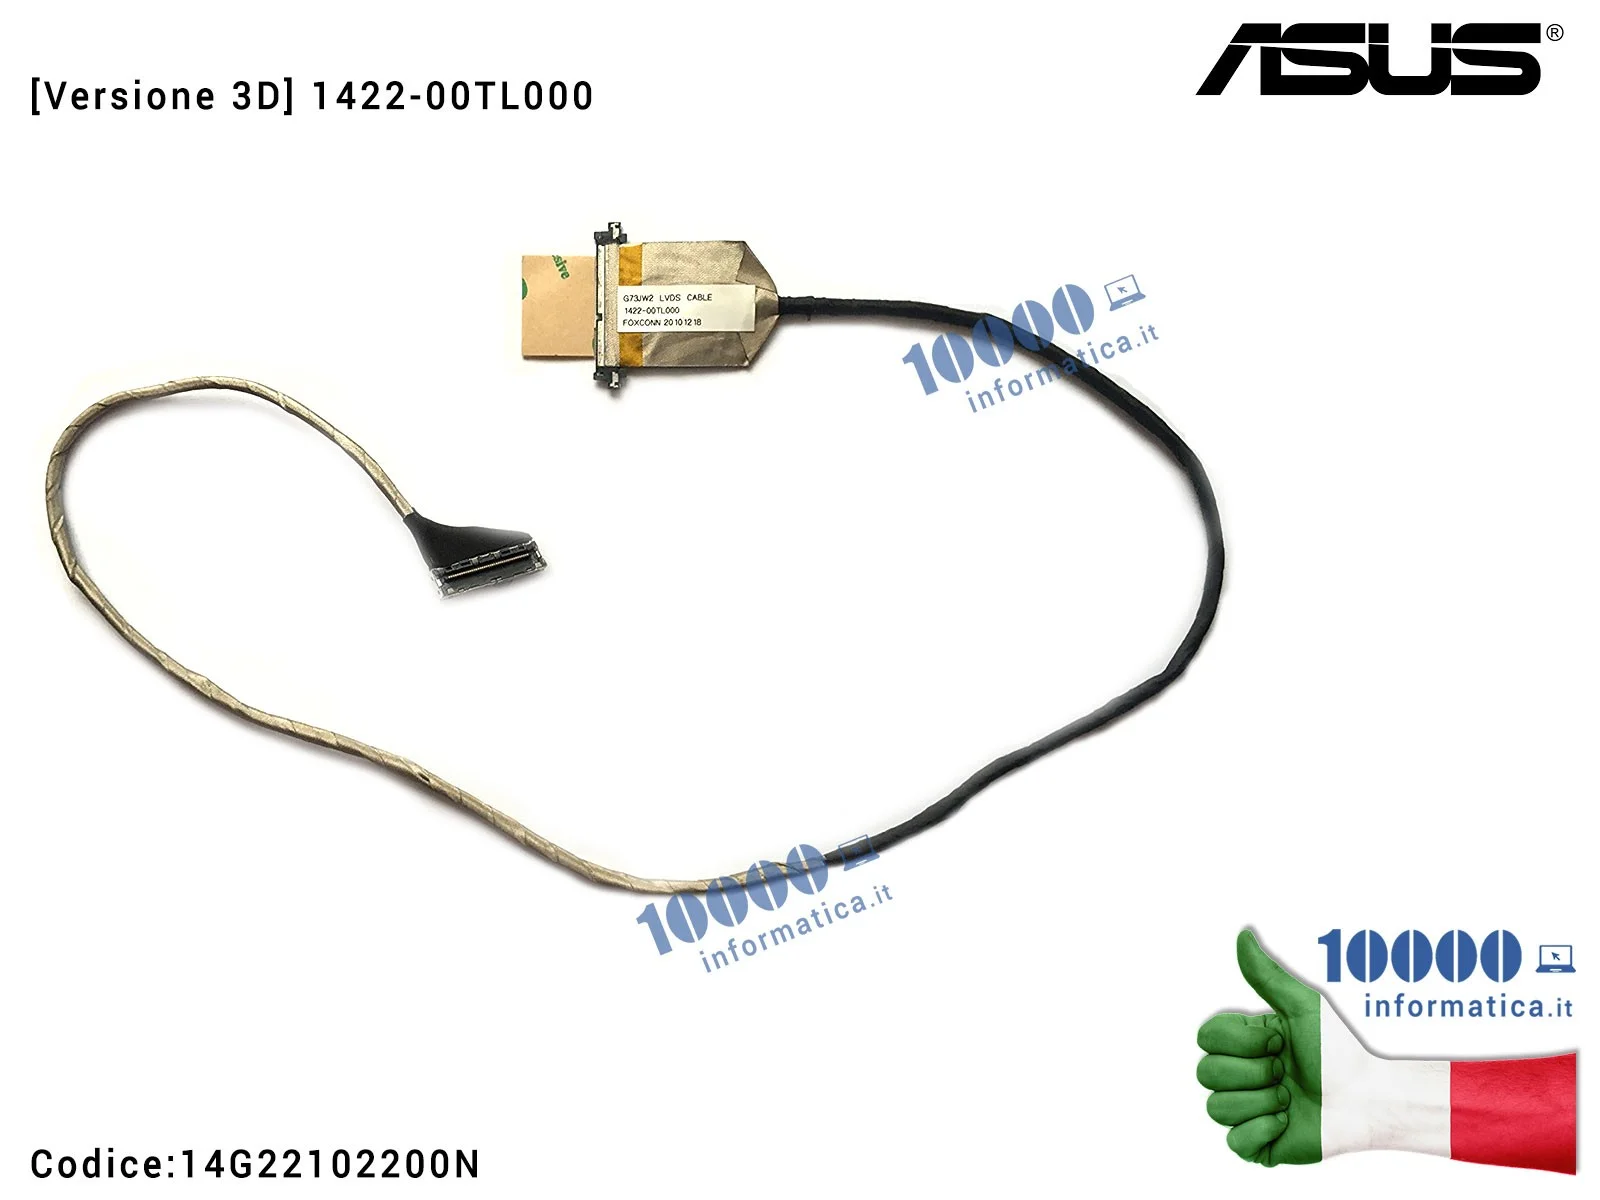 14G22102200N Cavo Flat LCD ASUS [VERSIONE 3D] ROG G73 G73J G73JH G73JW G73SW [3D] 1422-00TL000 14G22102200G